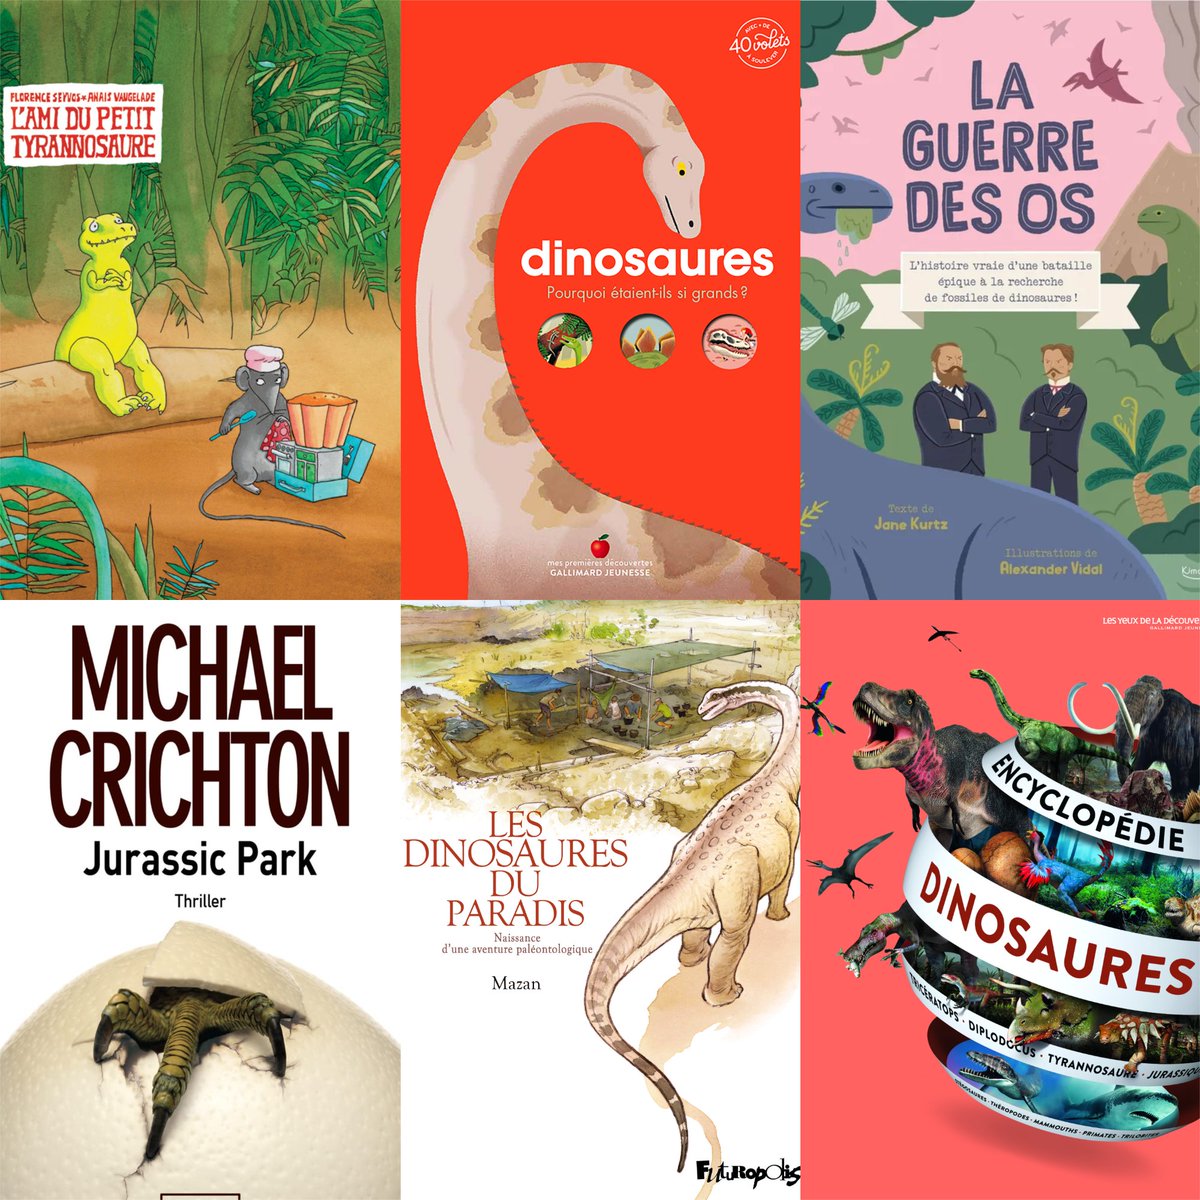 Découvrez notre sélection des meilleurs livres sur les dinosaures pour enfants ! 😍 🚸 📚 🦖 📖 

Lire l'article👉urlz.fr/pXXz

#culturadvisor #culture #livres #lecture #lire #enfants #familles #éducation #apprentissage #dinosaure #sélection #recommandations